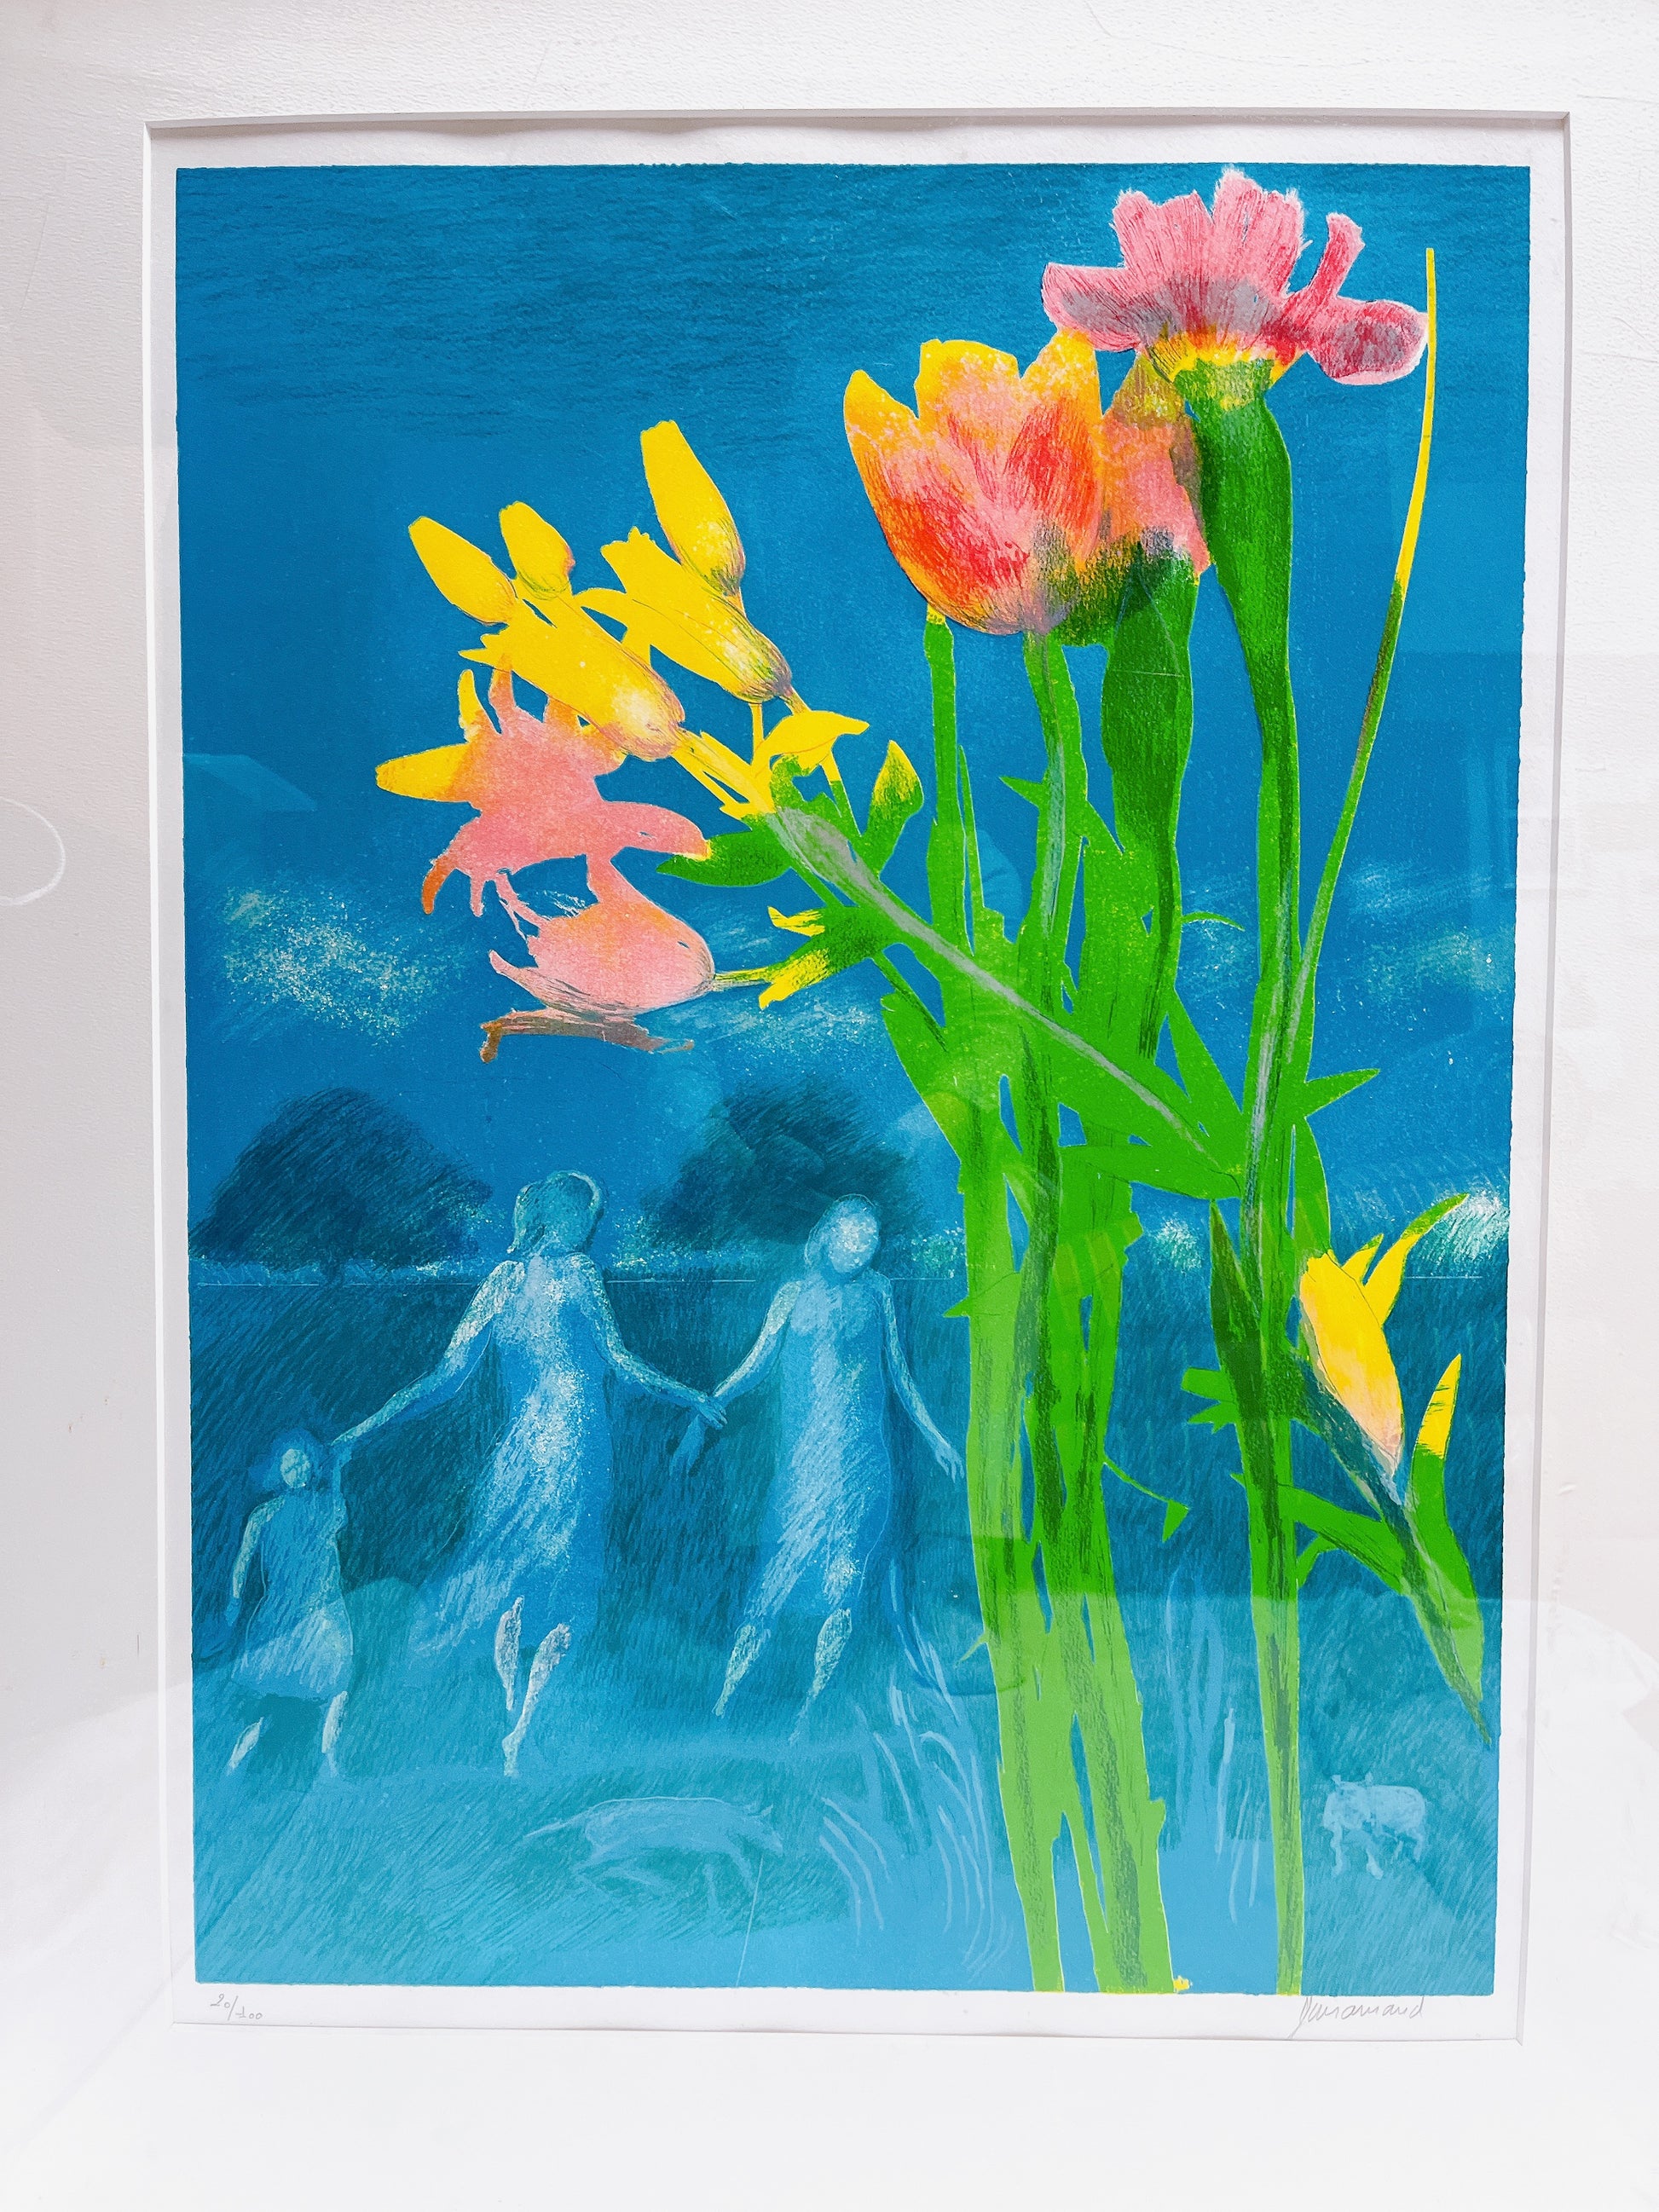 ポール・ギヤマン「青い背景の花々」 - ギャラリーK